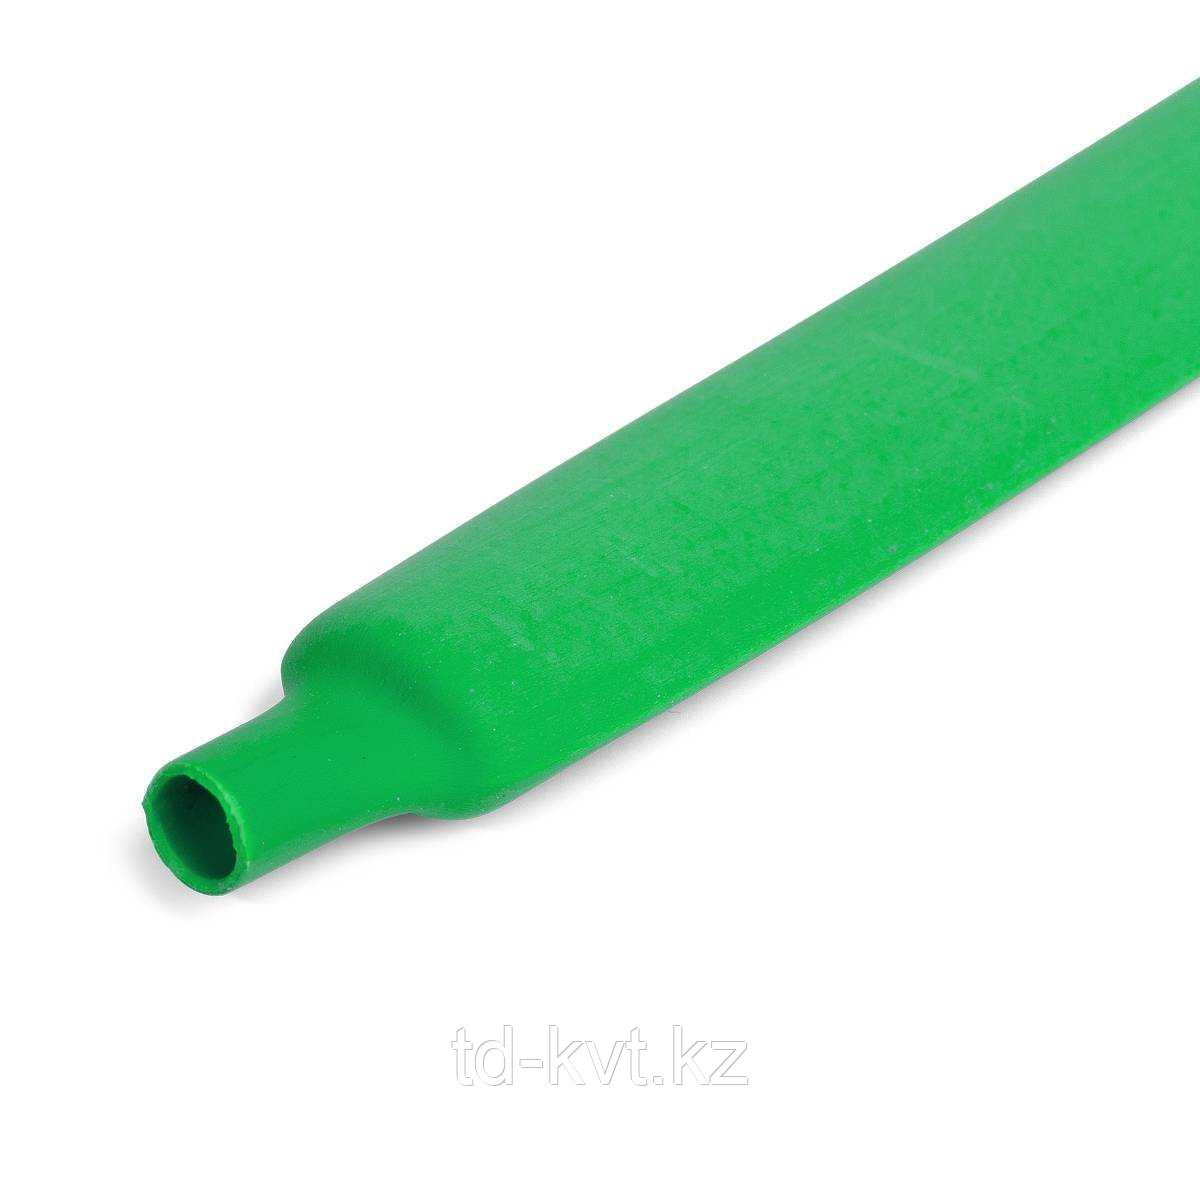 Цветная термоусадочная трубка с коэффициентом усадки 2:1 ТУТ (HF)-12/6, зел